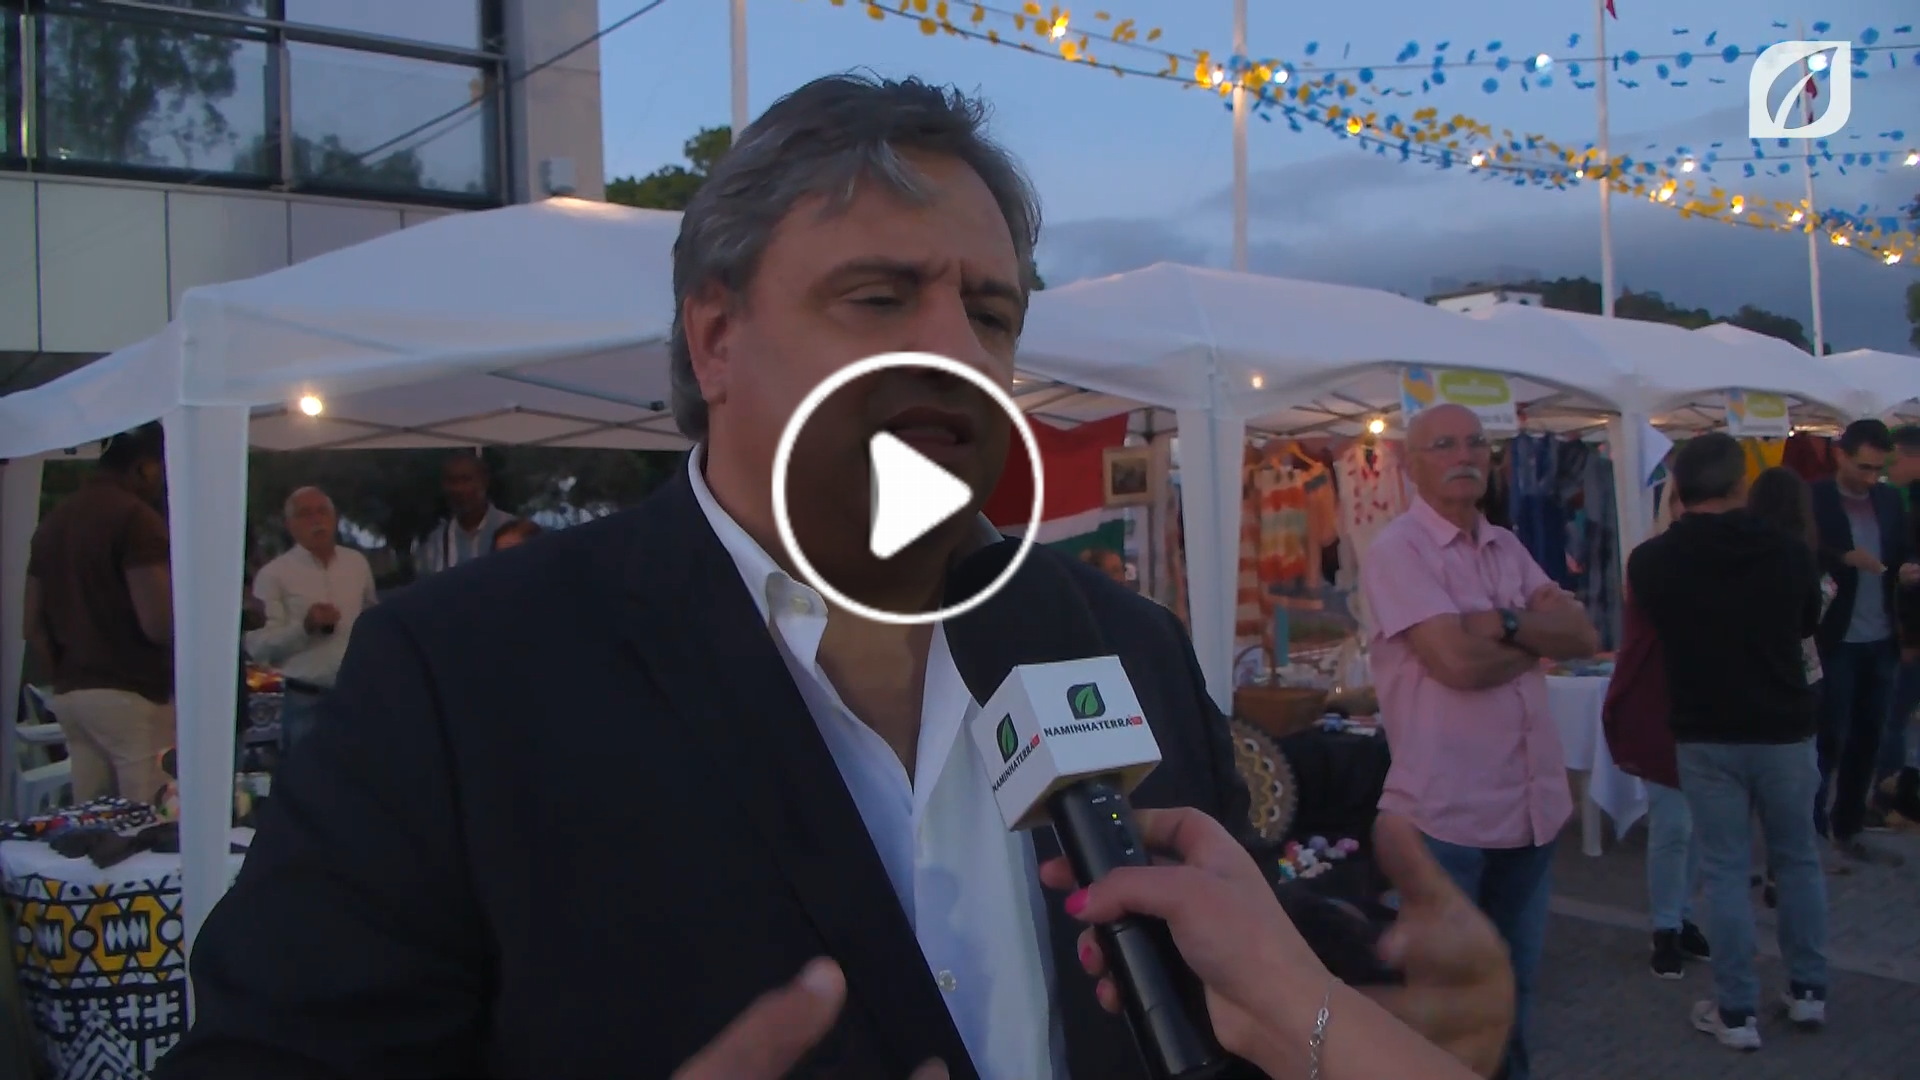 Entrevista a Bruno Pereira Vereador do Município do Funchal - DIA INTERCULTURAL